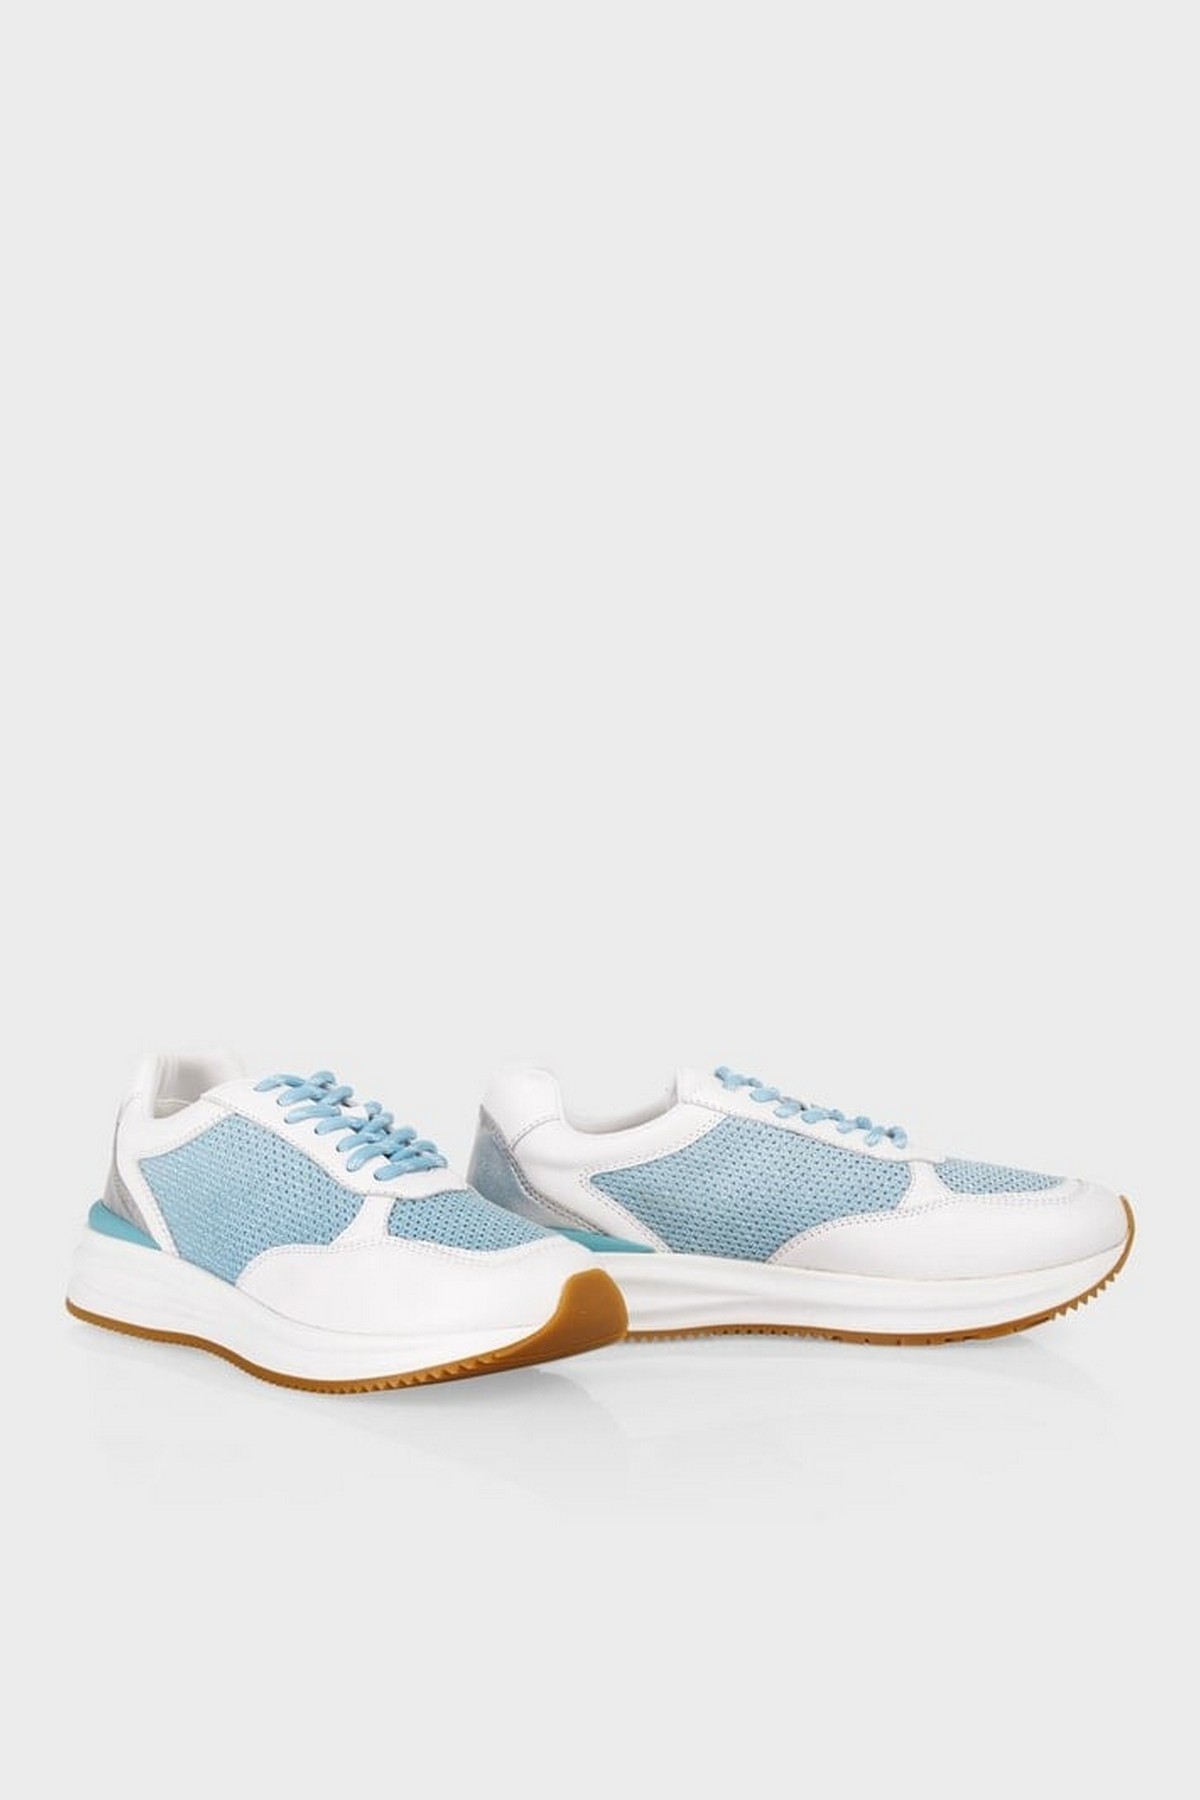 Sneaker mesh in de kleur wit blauw van het merk Marc Cain Shoes